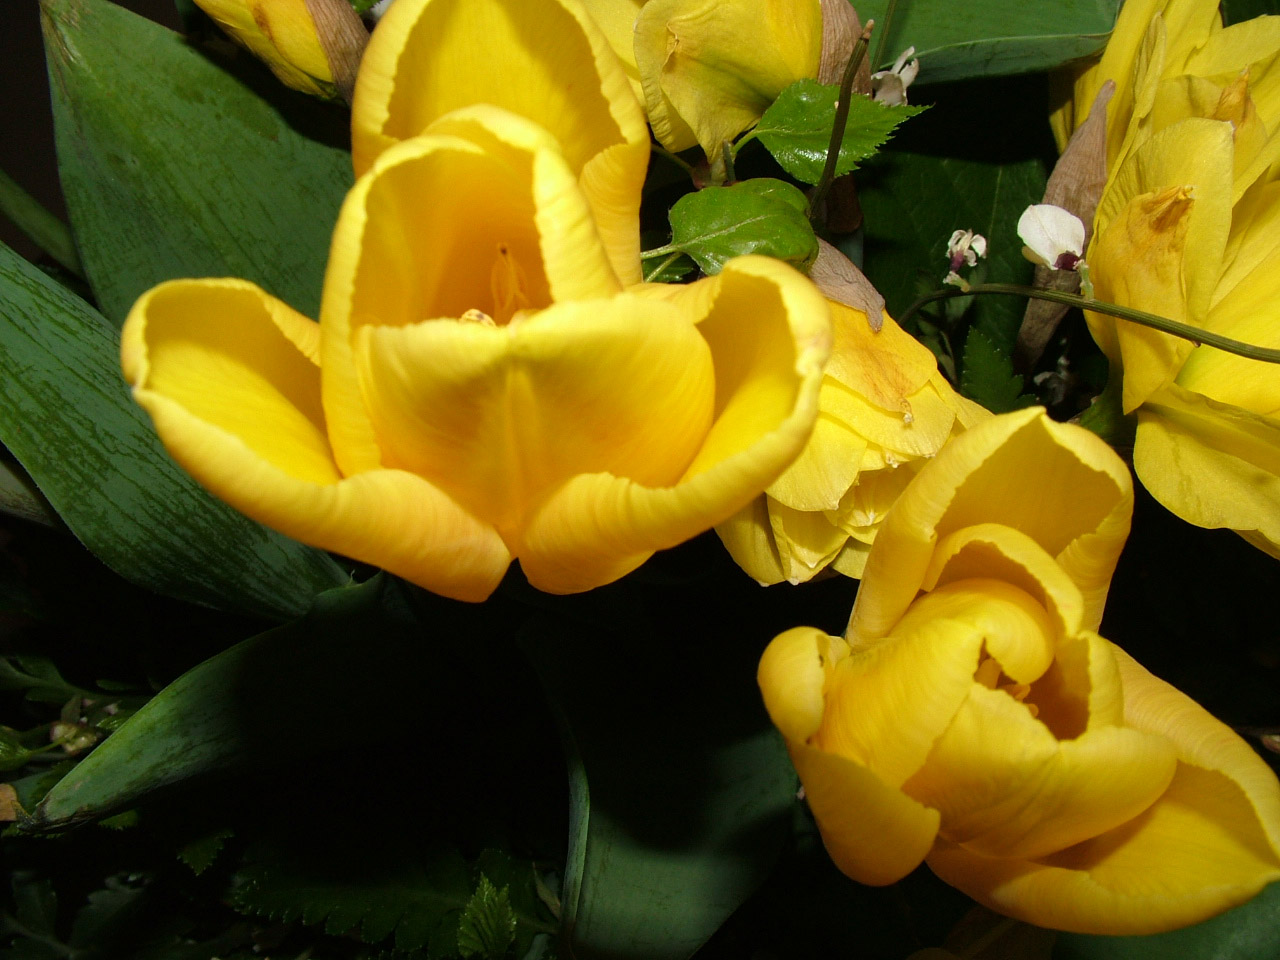 stauss yellow tulips free photo